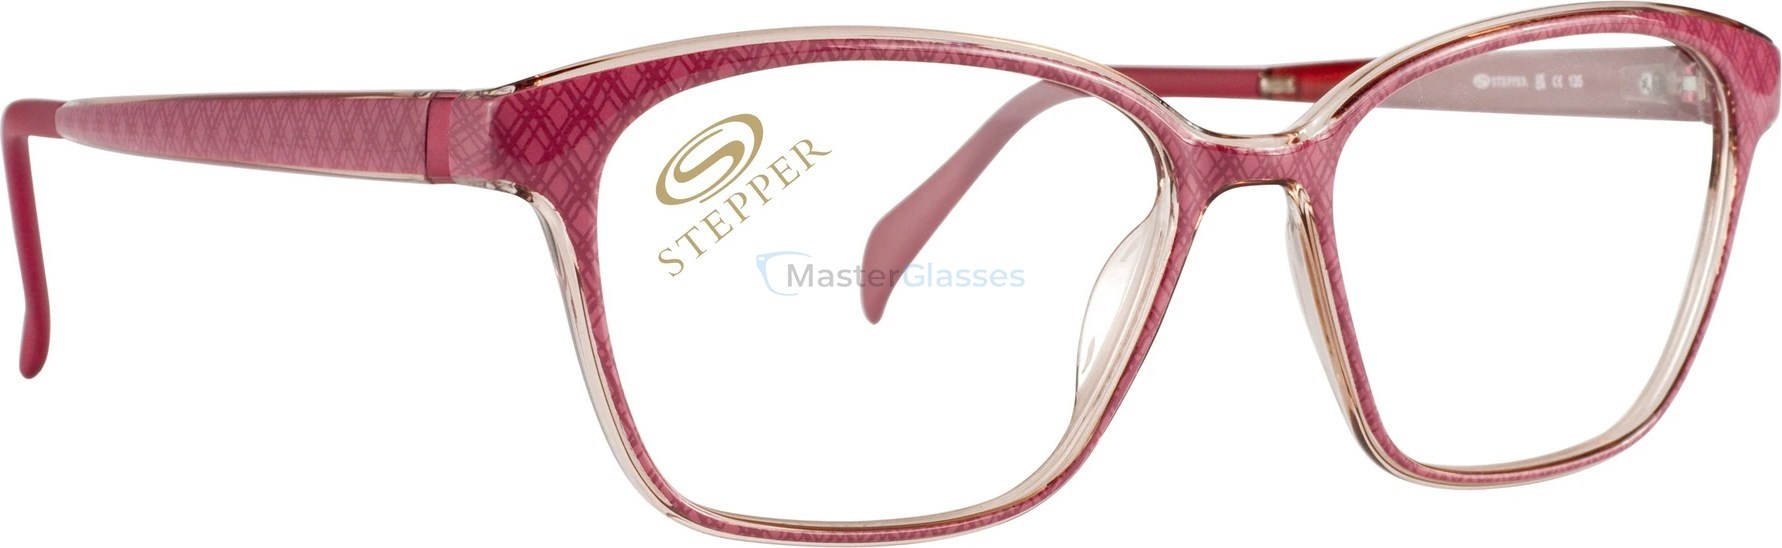  Stepper SI-30179 F330